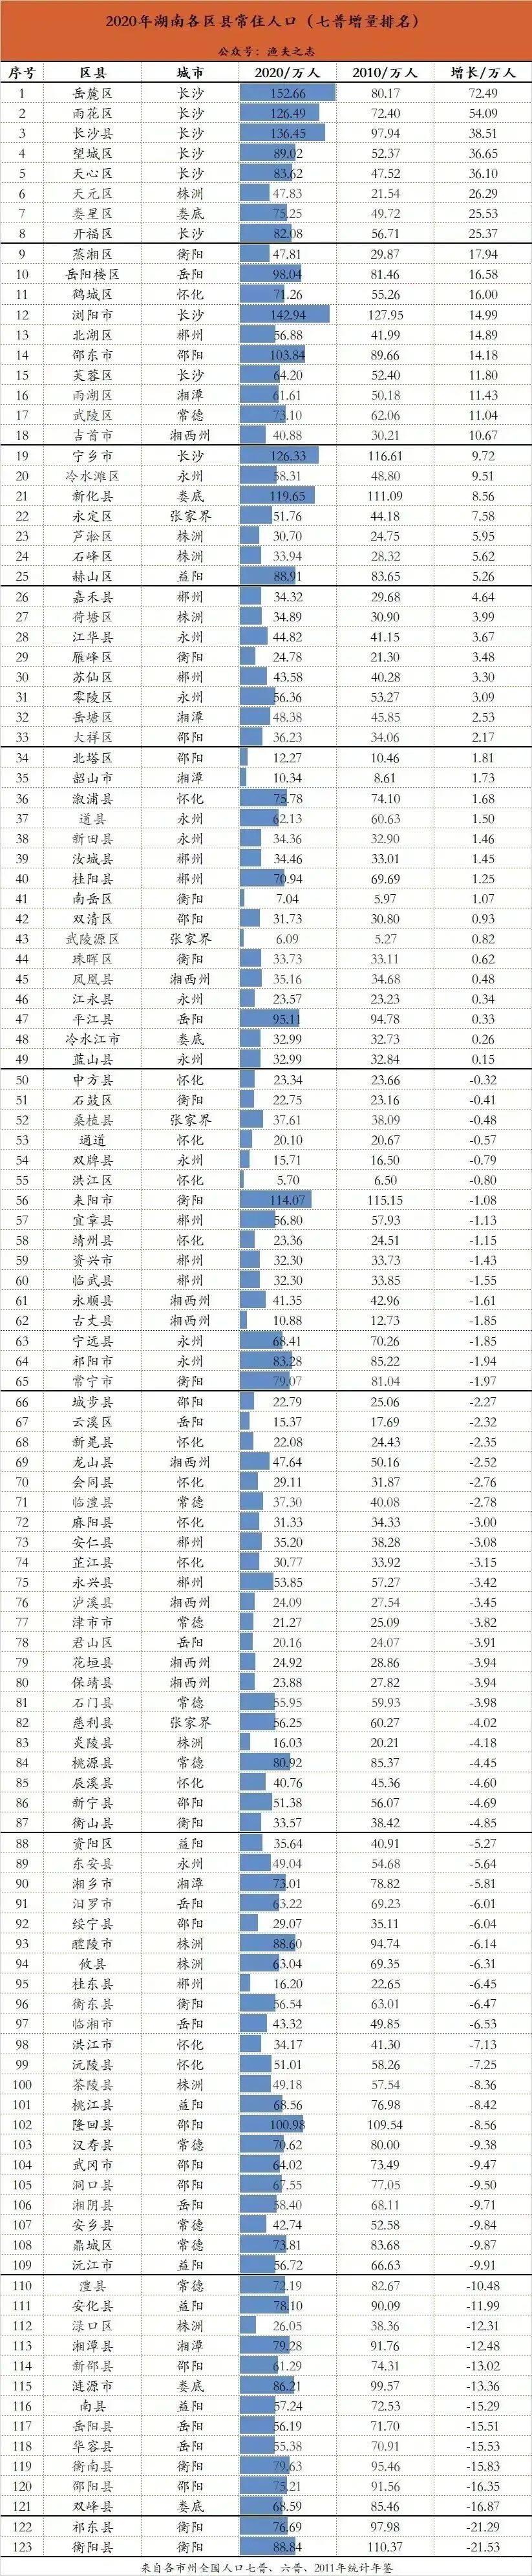 七普之后湖南县市区最新人口增量变化排名,雨花区暴增54万排第二